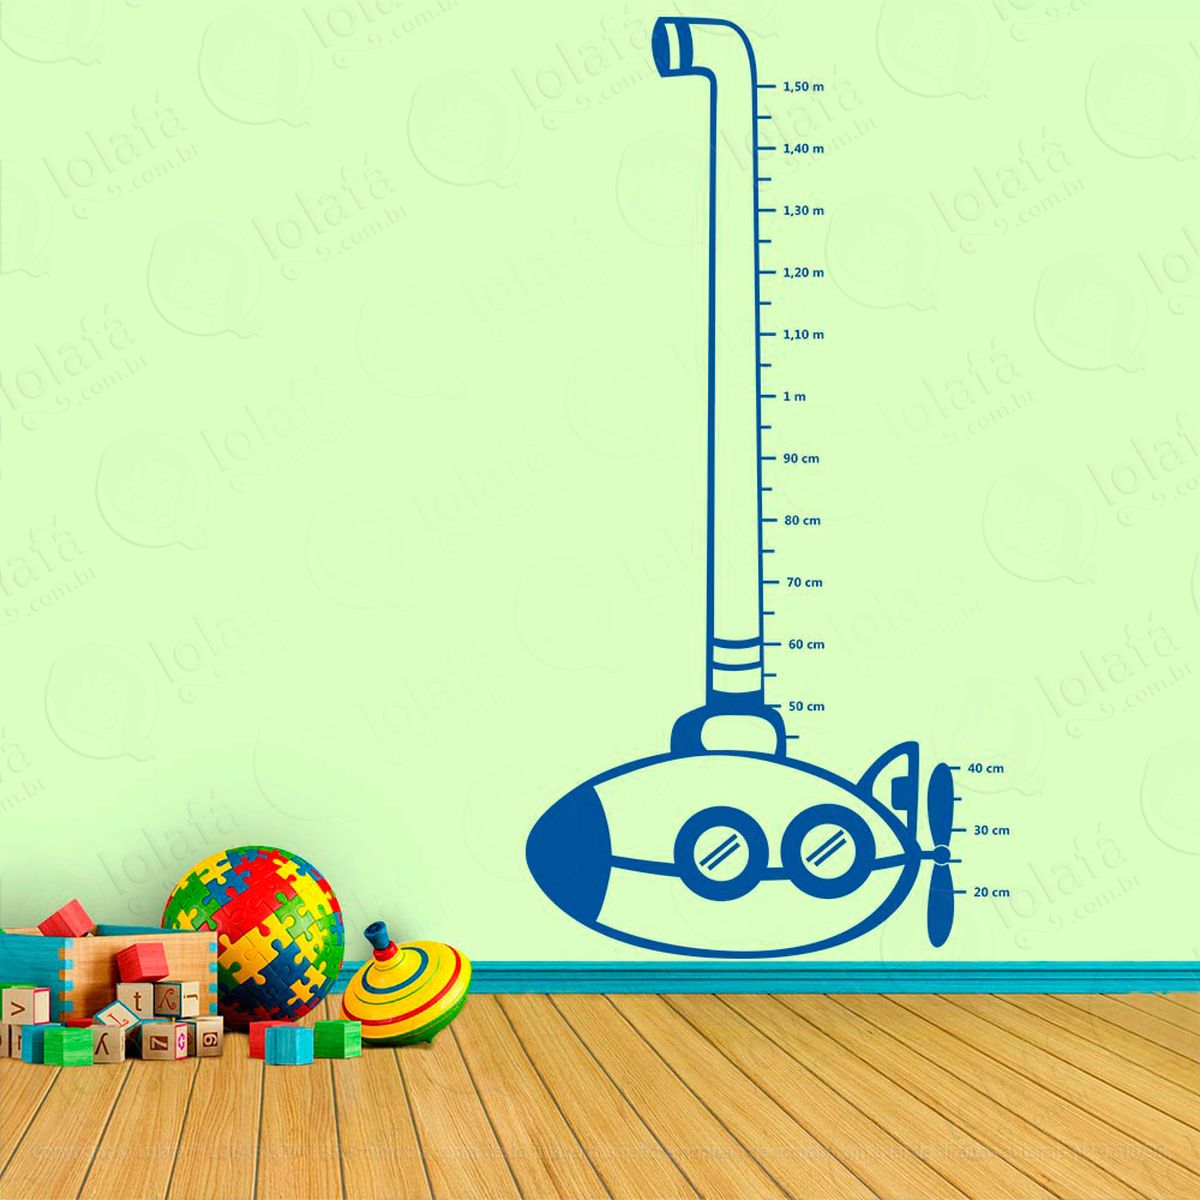 submarino adesivo régua de crescimento infantil, medidor de altura para quarto, porta e parede - mod:3